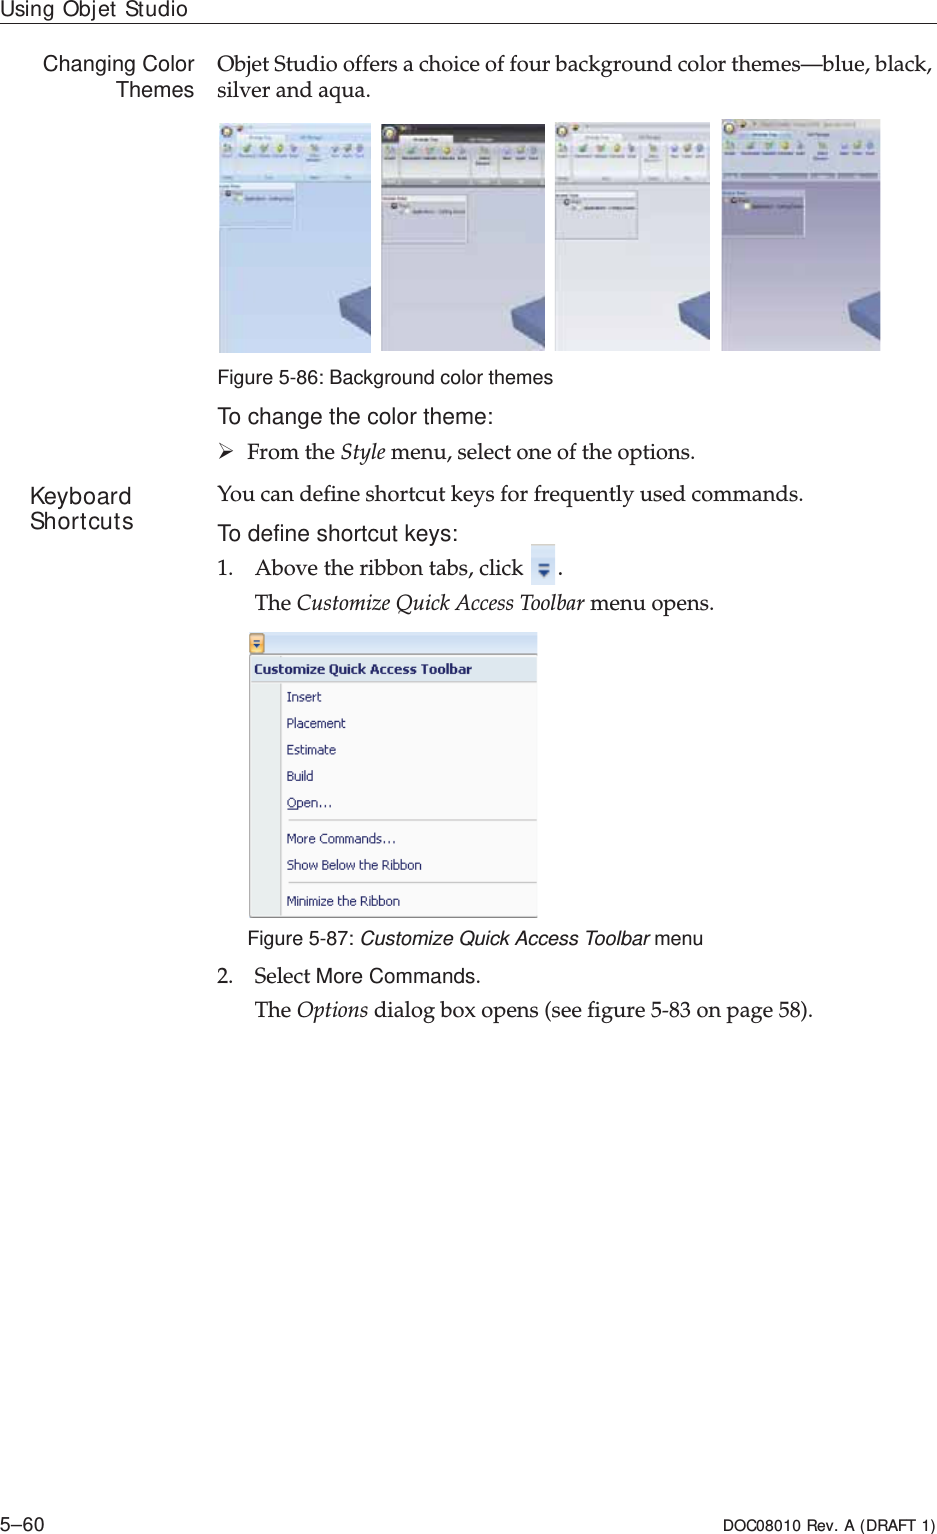 Using Objet Studio5–60 DOC08010 Rev. A (DRAFT 1)Changing ColorThemes ObjetȱStudioȱoffersȱaȱchoiceȱofȱfourȱbackgroundȱcolorȱthemes—blue,ȱblack,ȱsilverȱandȱaqua.ȱFigure 5-86: Background color themesTo change the color theme:¾FromȱtheȱStyleȱmenu,ȱselectȱoneȱofȱtheȱoptions.Keyboard Shortcuts Youȱcanȱdefineȱshortcutȱkeysȱforȱfrequentlyȱusedȱcommands.To define shortcut keys:1. Aboveȱtheȱribbonȱtabs,ȱclickȱ.TheȱCustomizeȱQuickȱAccessȱToolbarȱmenuȱopens.Figure 5-87: Customize Quick Access Toolbar menu2. SelectȱMore Commands.TheȱOptionsȱdialogȱboxȱopensȱ(seeȱfigure 5Ȭ83ȱonȱpage 58).